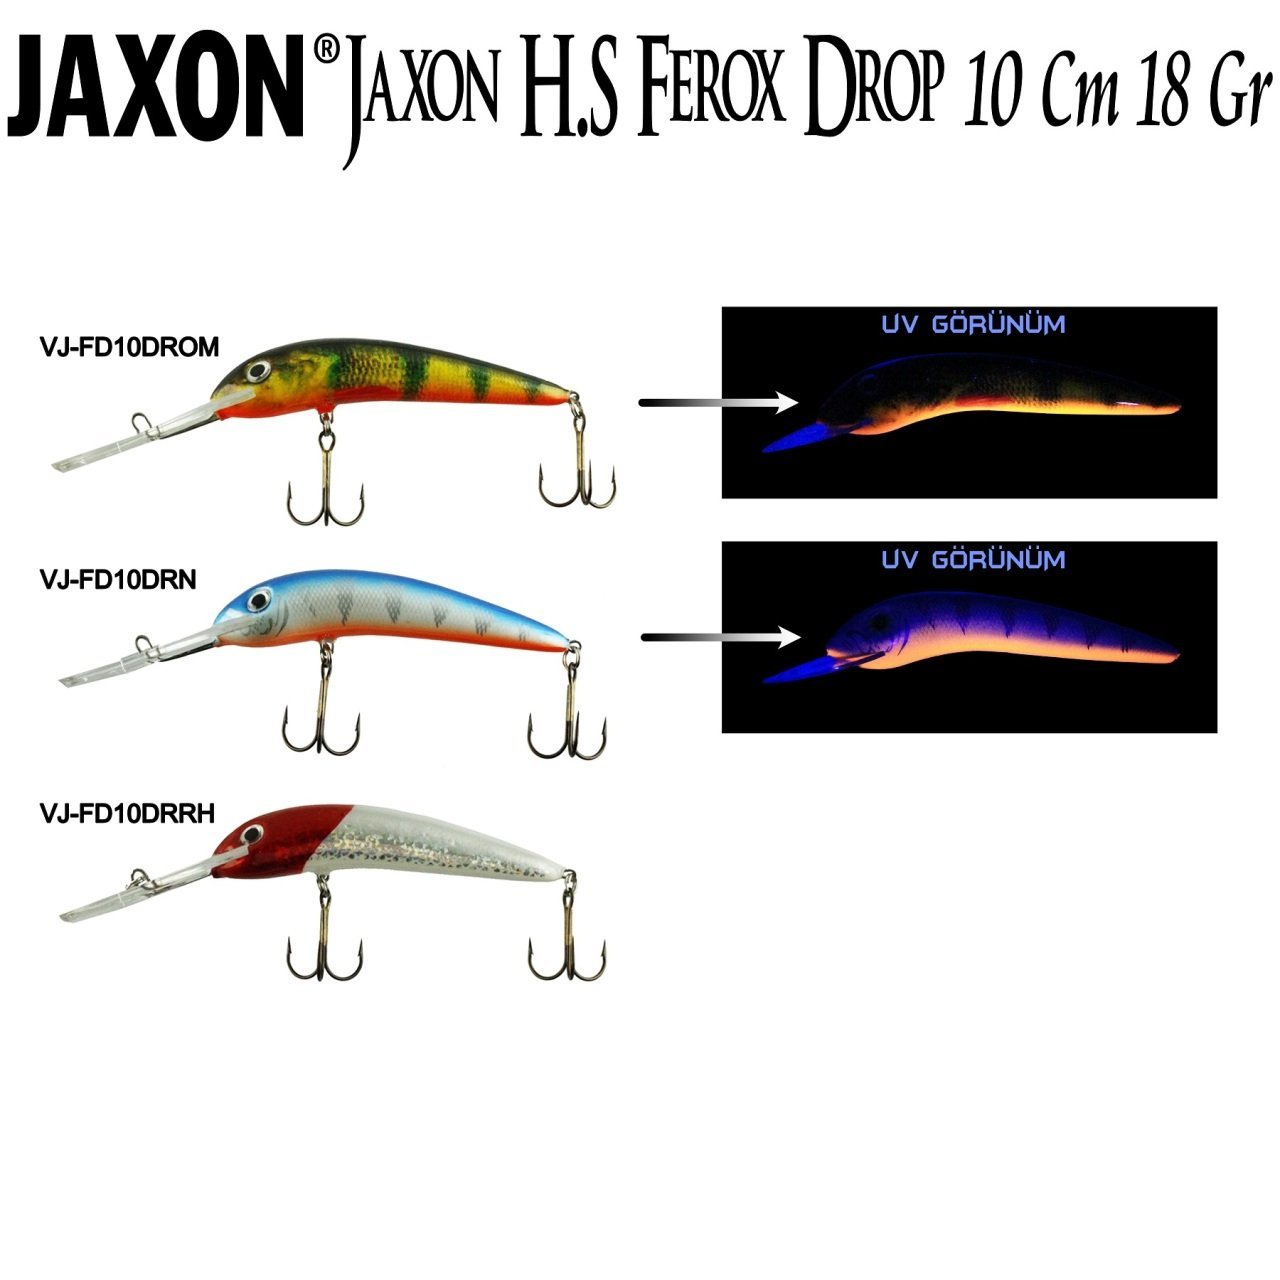 Jaxon H.S Ferox Drop 10 Cm 18 Gr Drn